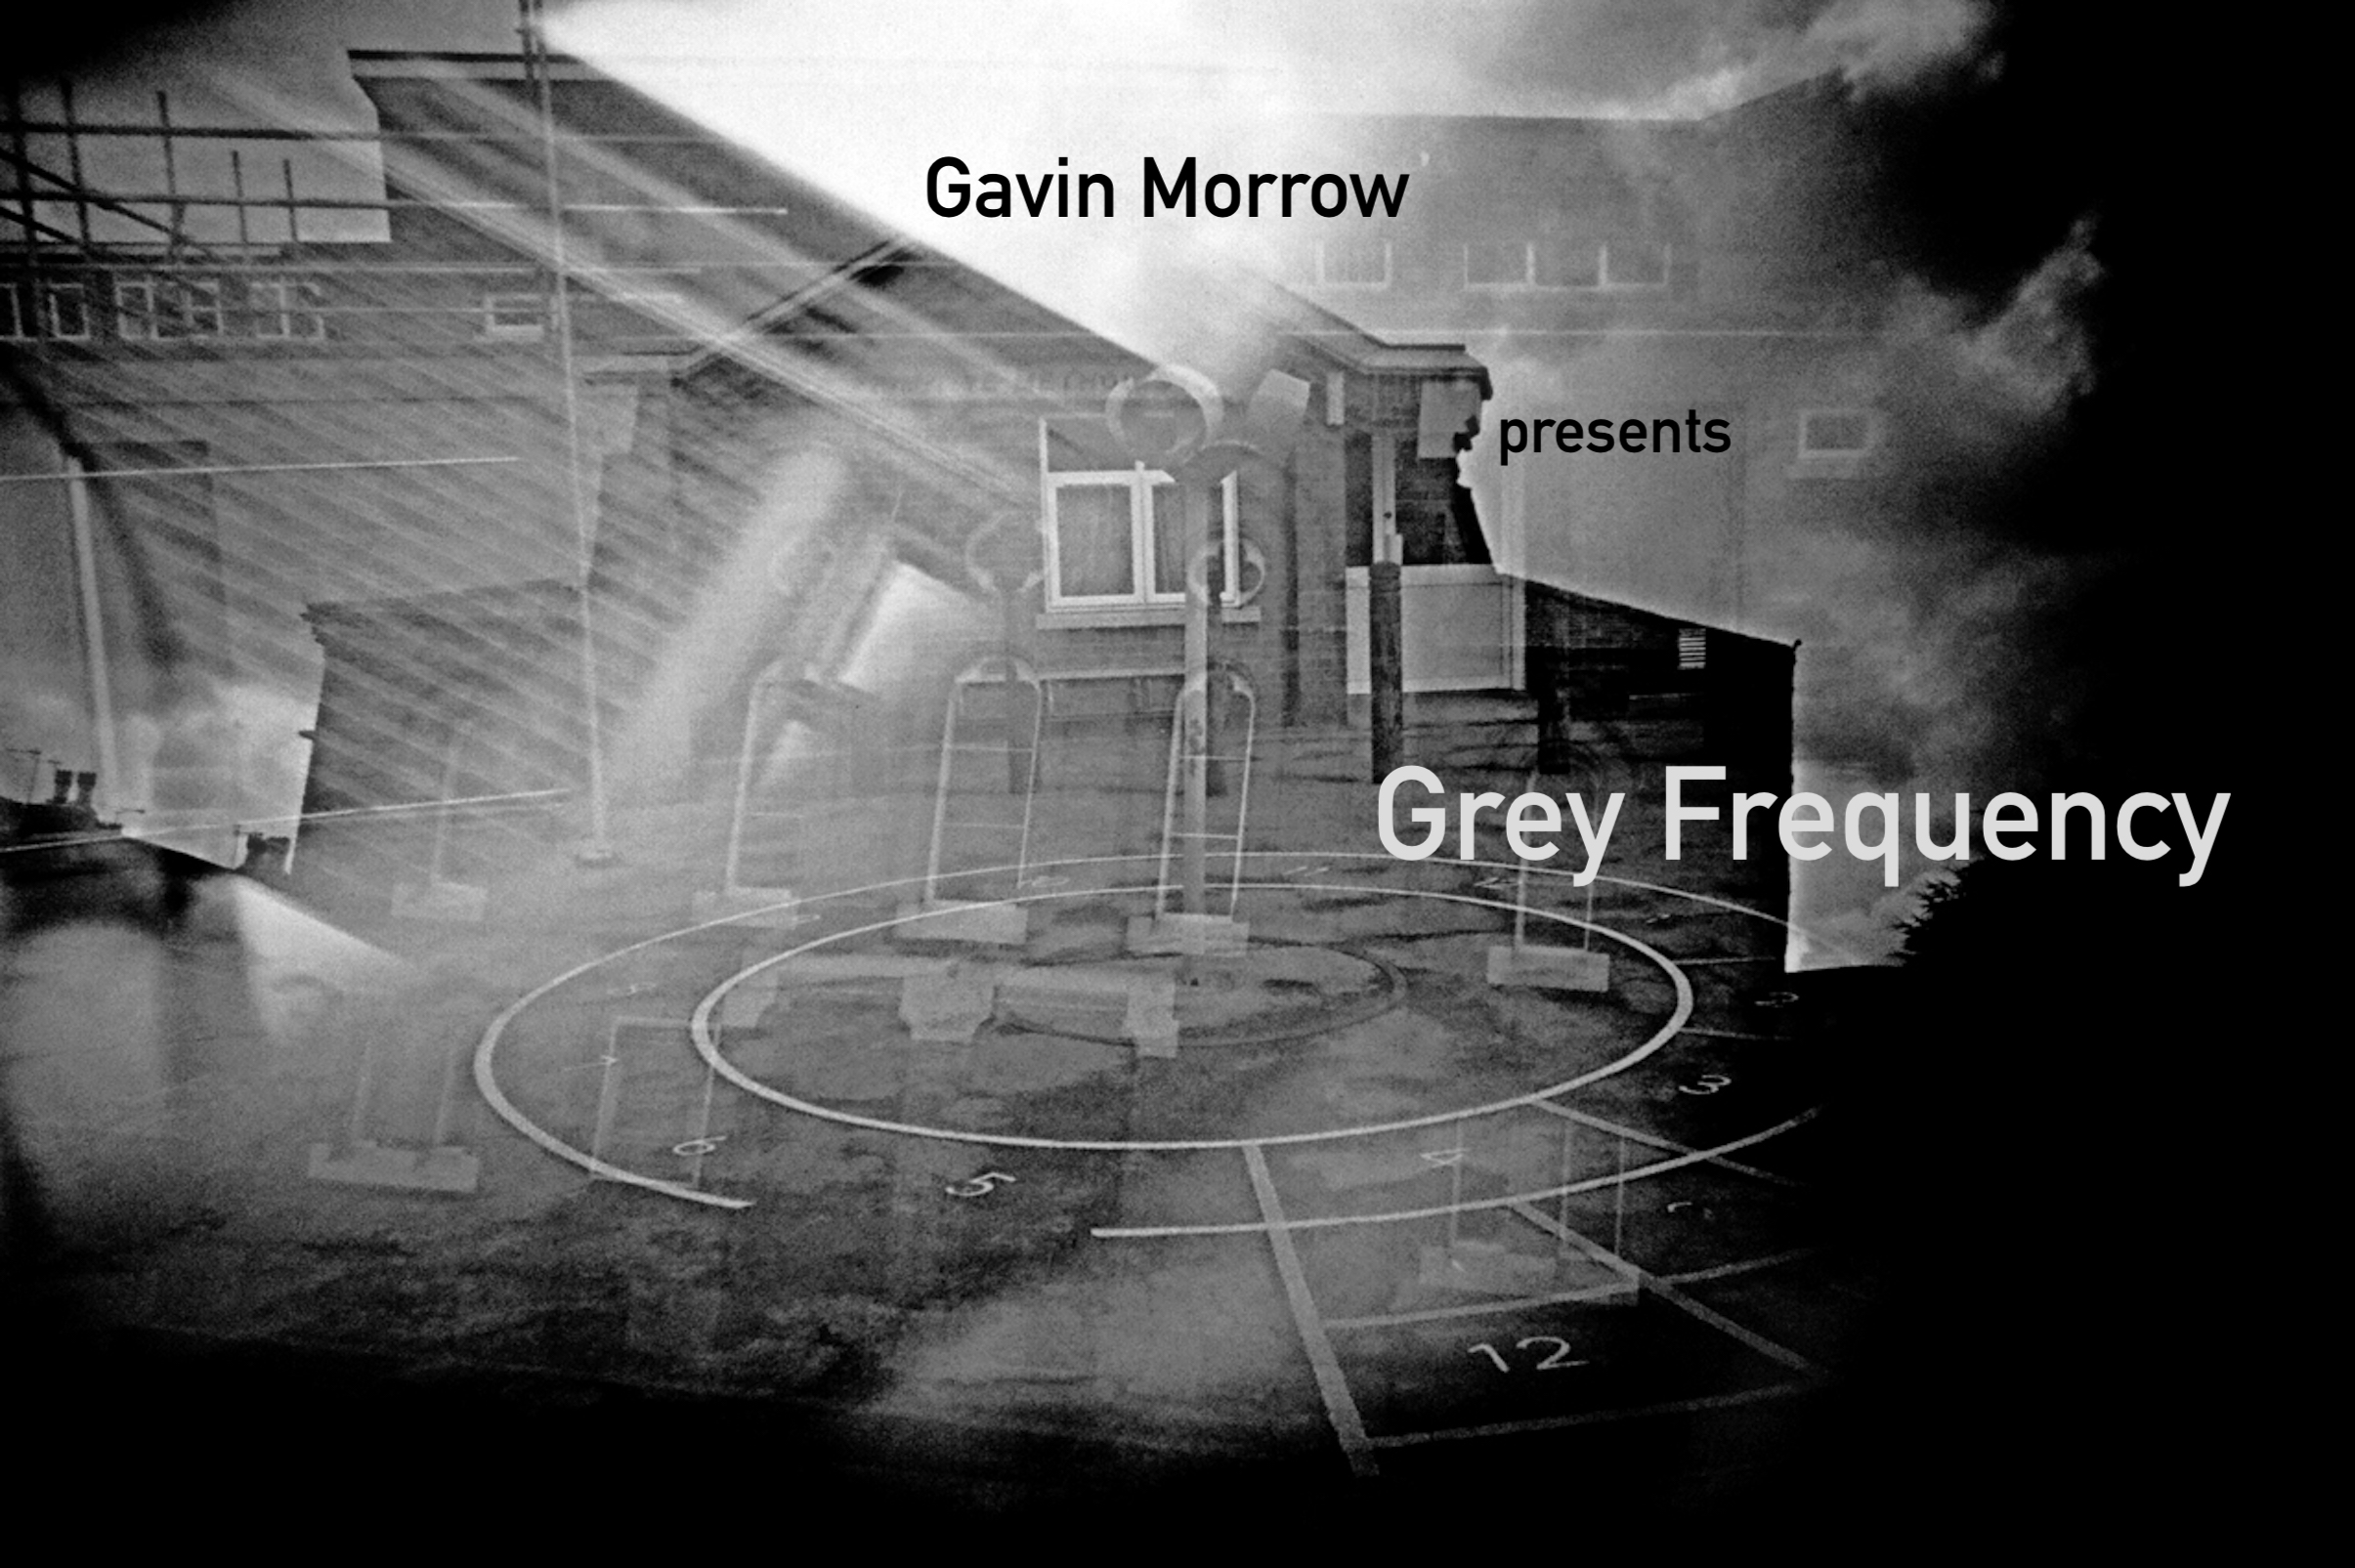 Gavin Morrow presents Grey Frequency